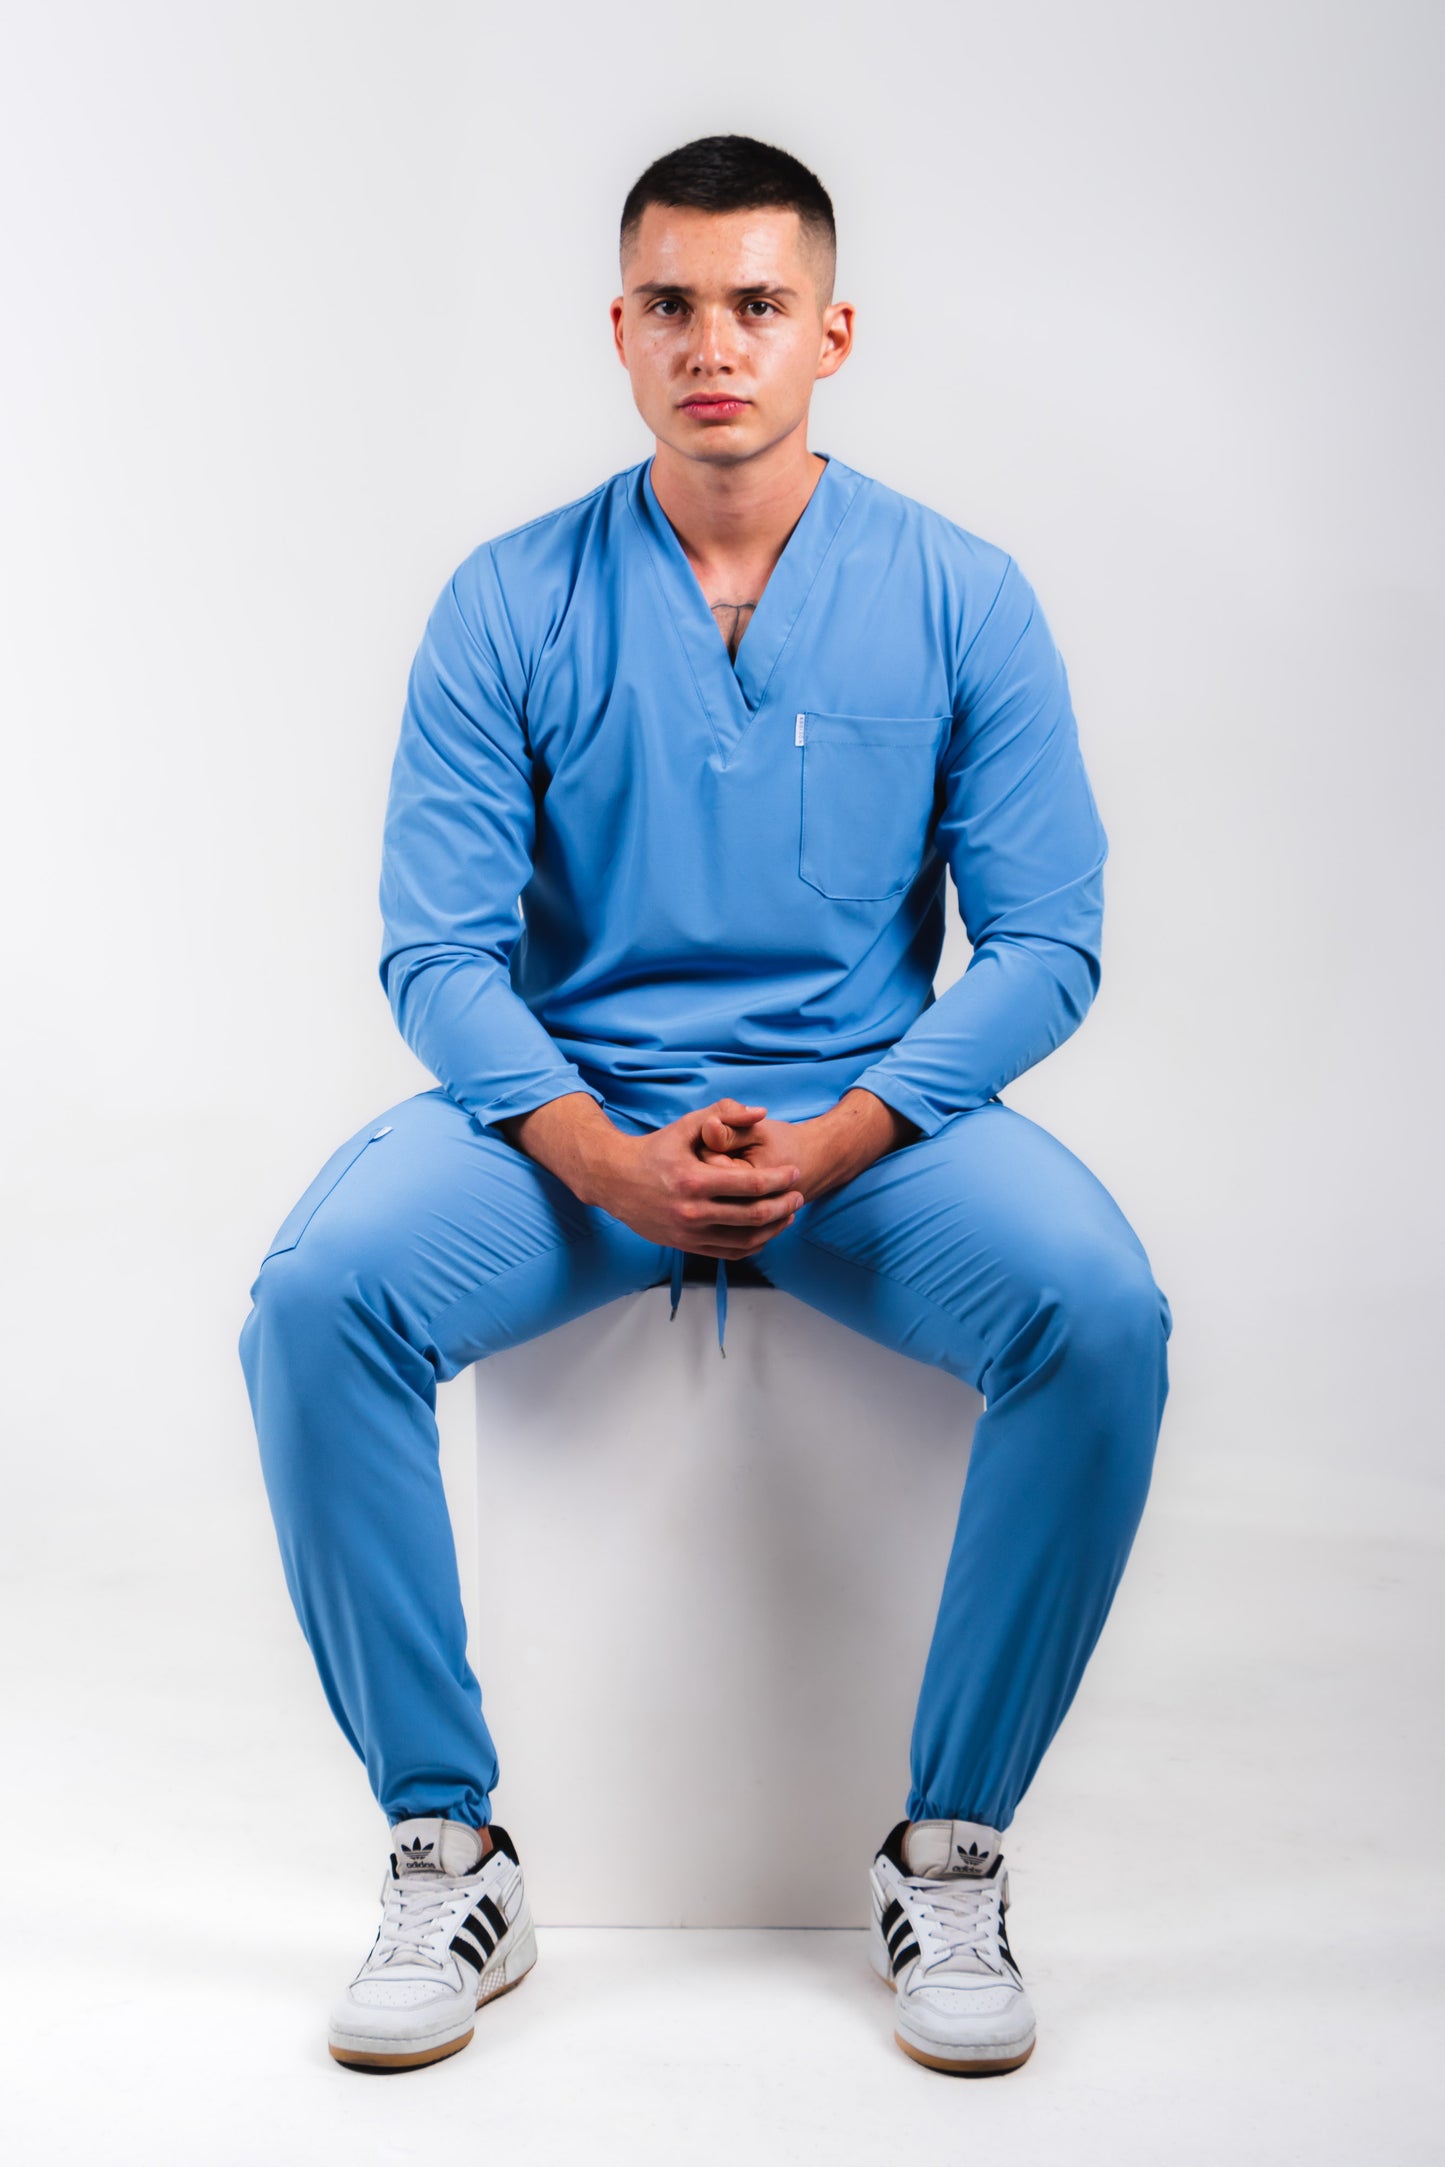 Uniforme quirúrgico para caballero color azul francia, manga larga corte jogger. modelo winter marca addisonscrubs.